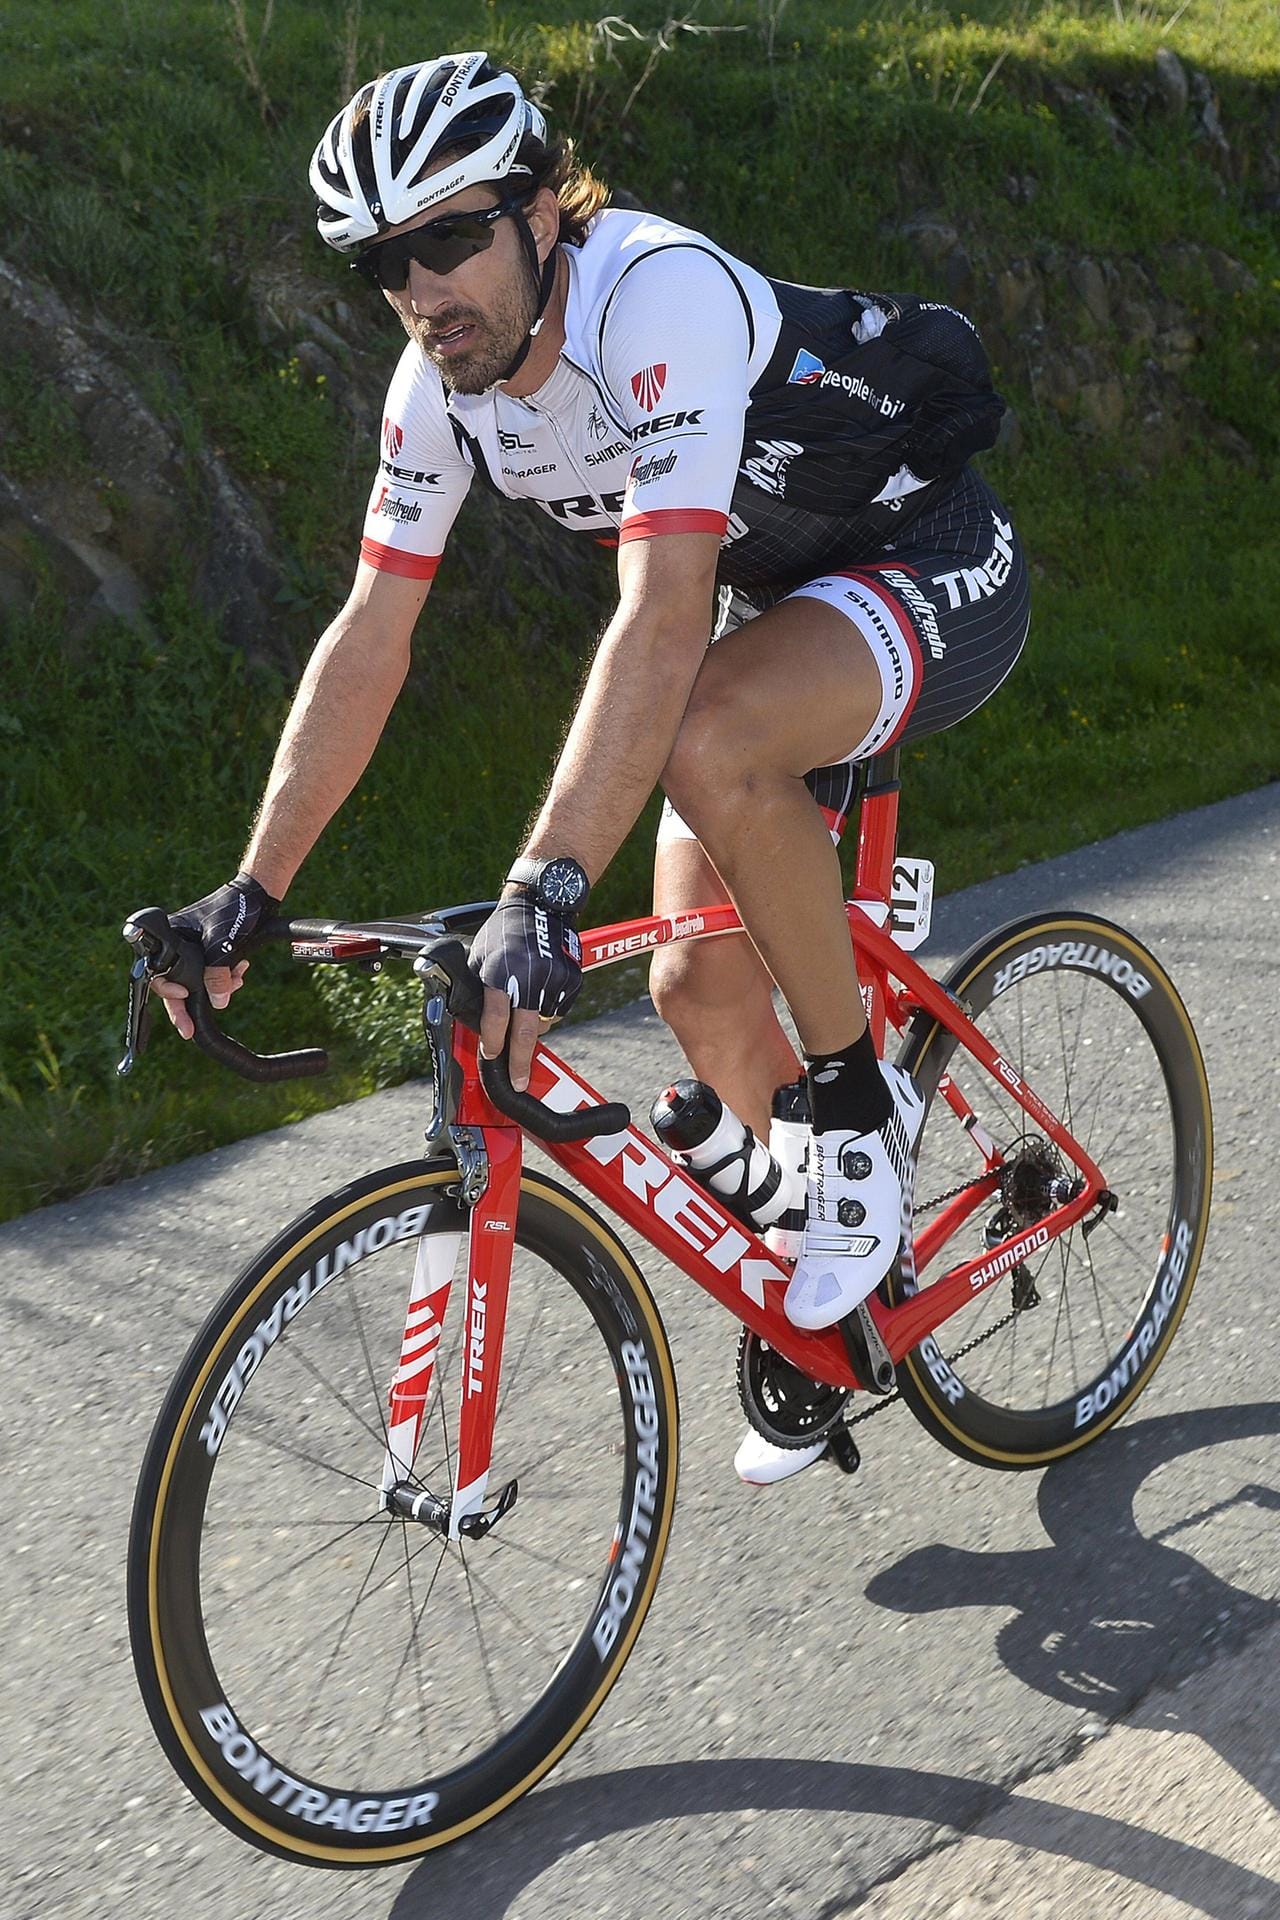 Schweizer Erfolgsgarant: Etappensiege, Klassiker, Zeitfahren - Fabian Cancellara bereitet dem Team Trek Segafredo viel Freude. Die Fähigkeiten des Eidgenossen machen ihm zu einem der Kapitäne der US-Mannschaft.